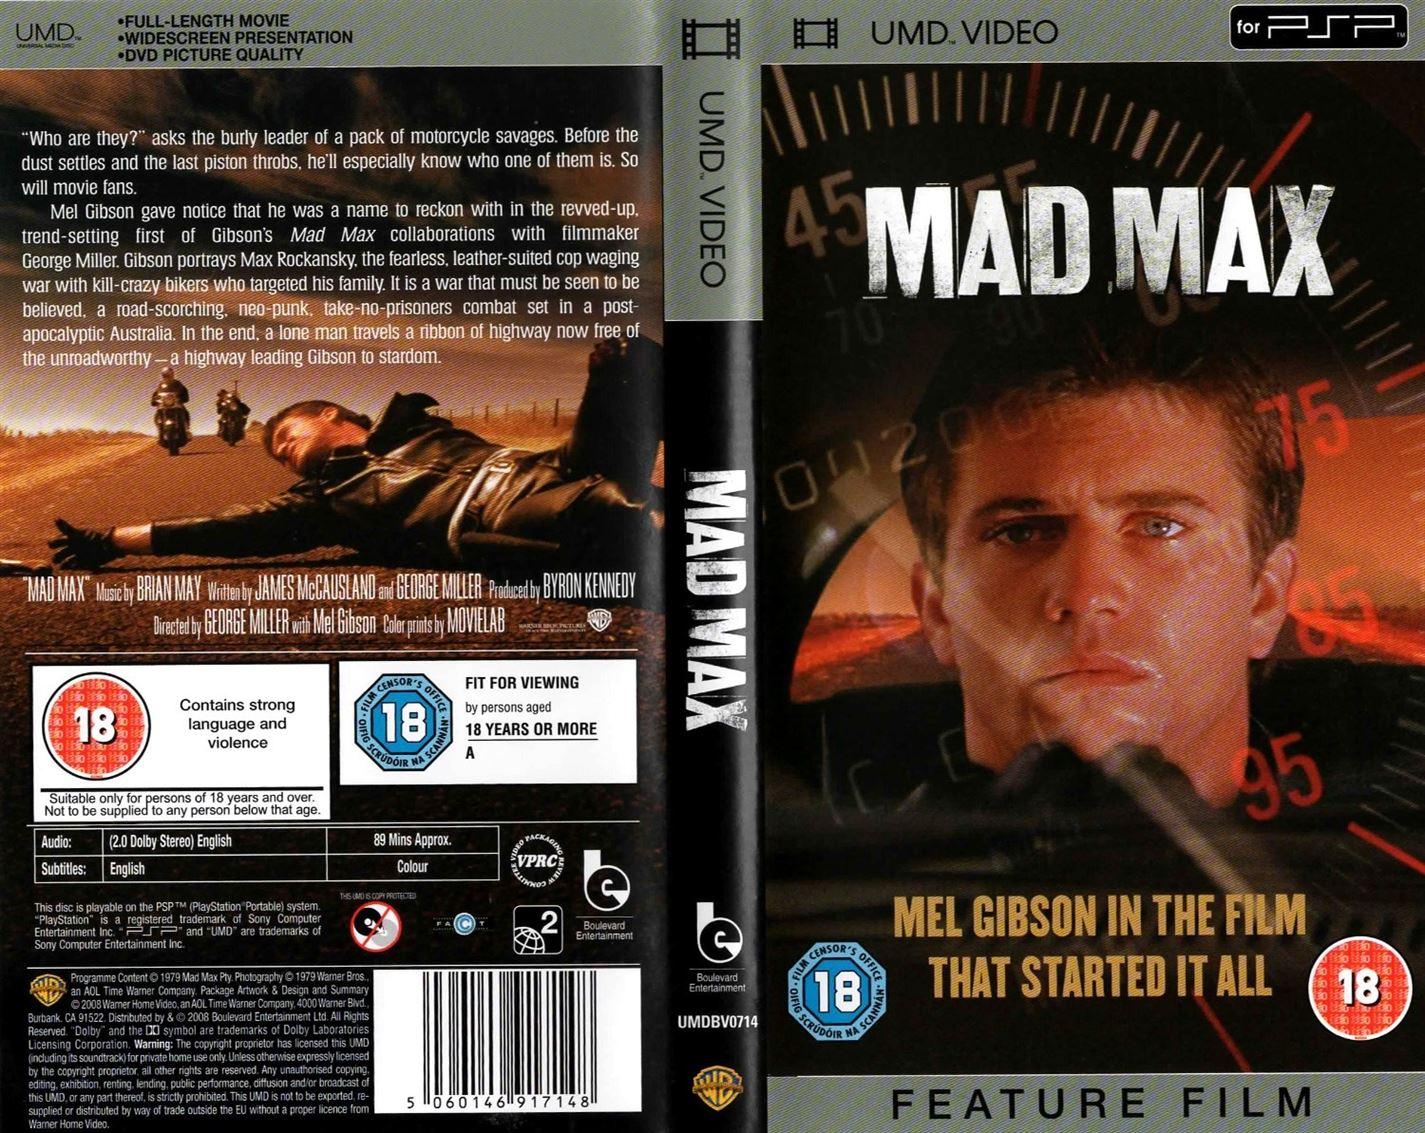 Mad Max (UMD Mini for PSP) - UK Seller